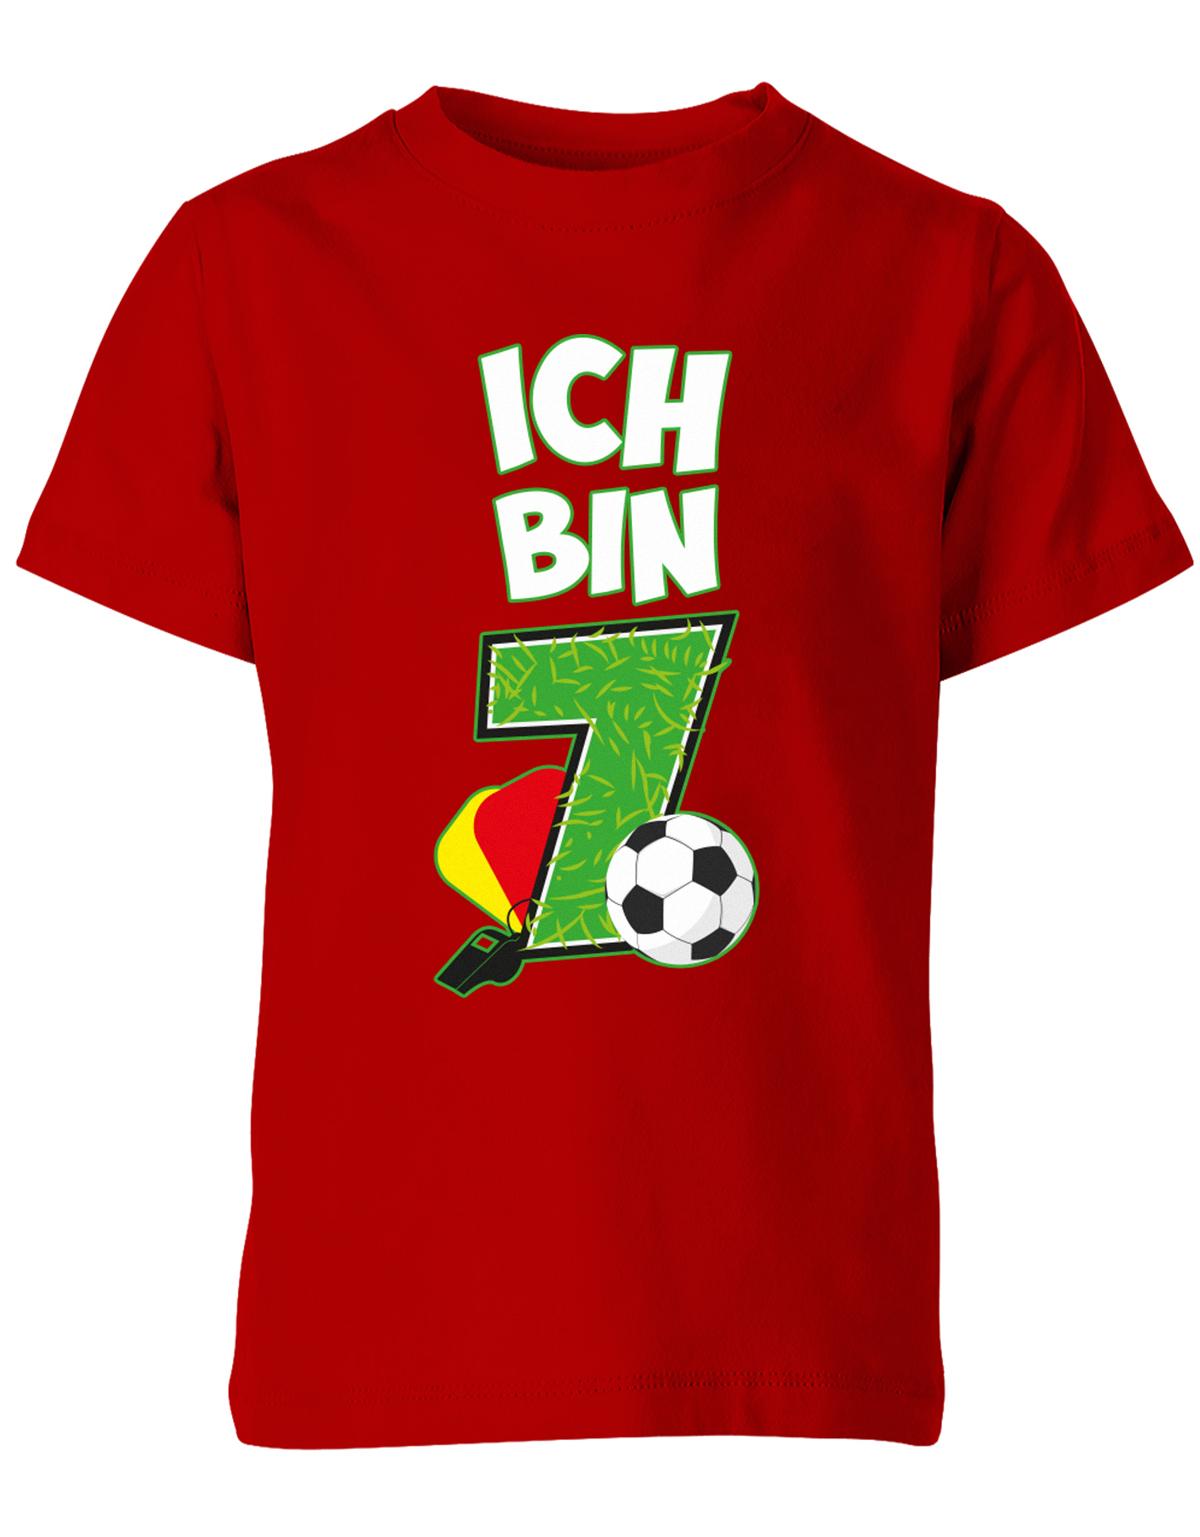 ich-bin-7-fussball-rote-gelbe-karte-geburtstag-fussballer-shirt-kinder-shirt-rot